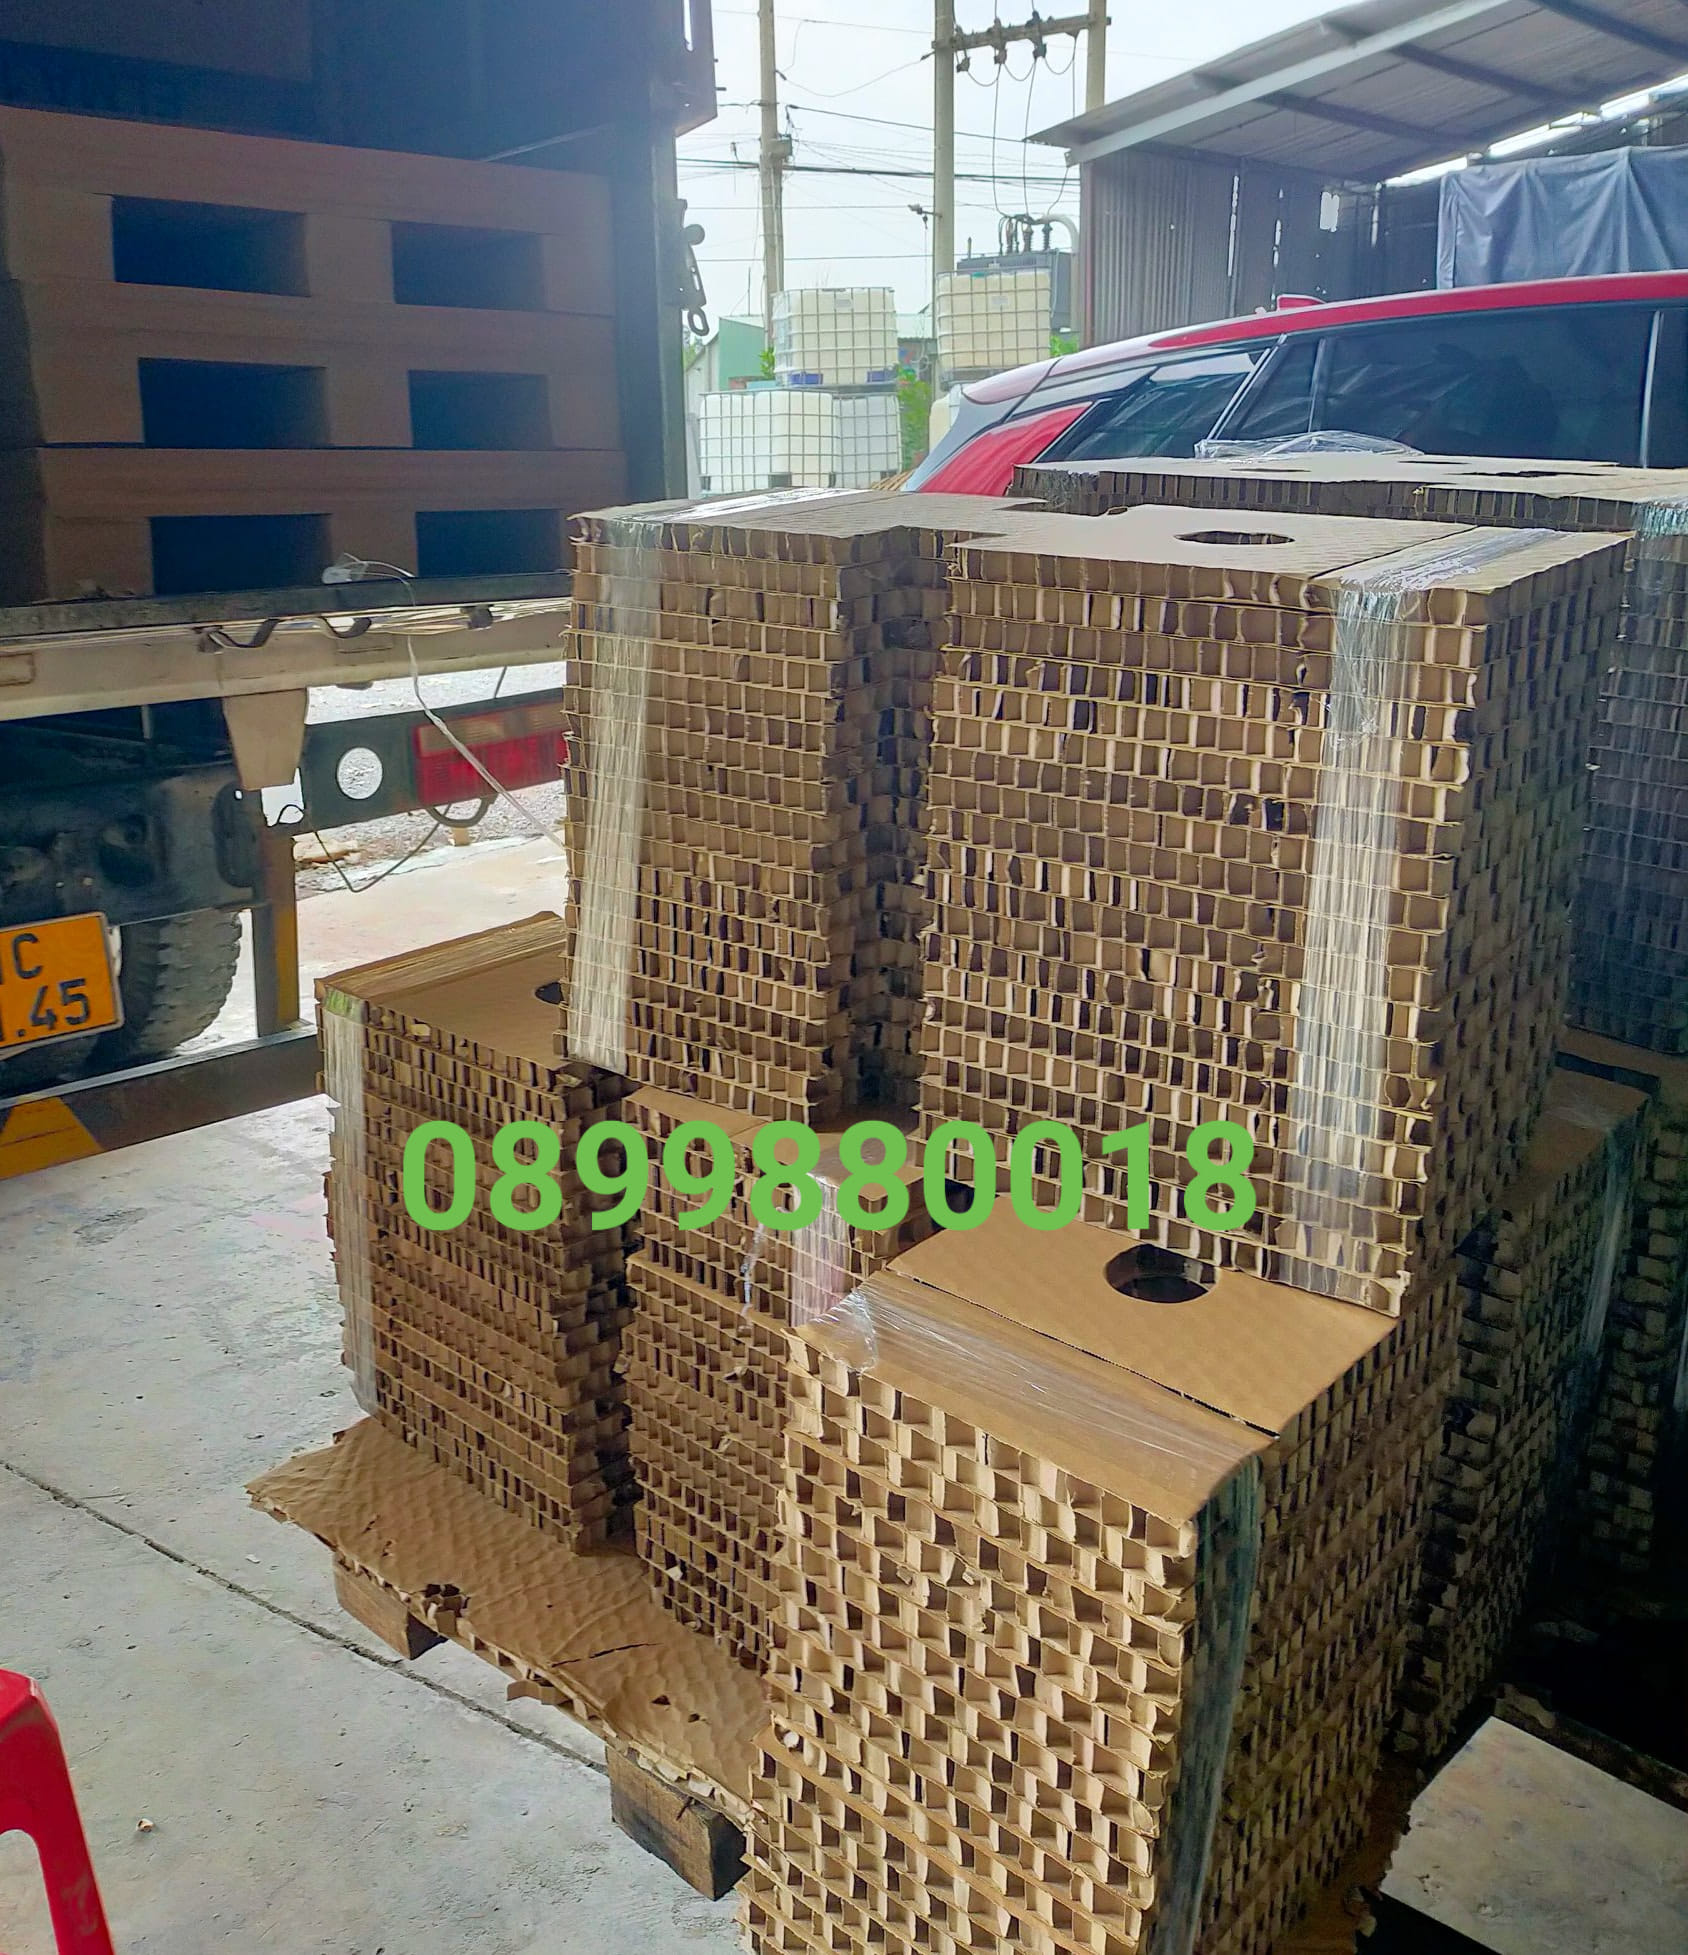 Đơn vị cung cấp các loại giấy tổ ong giá tốt nhất thị trường Bình Dương & TP Hồ Chí Minh />
                                                 		<script>
                                                            var modal = document.getElementById(